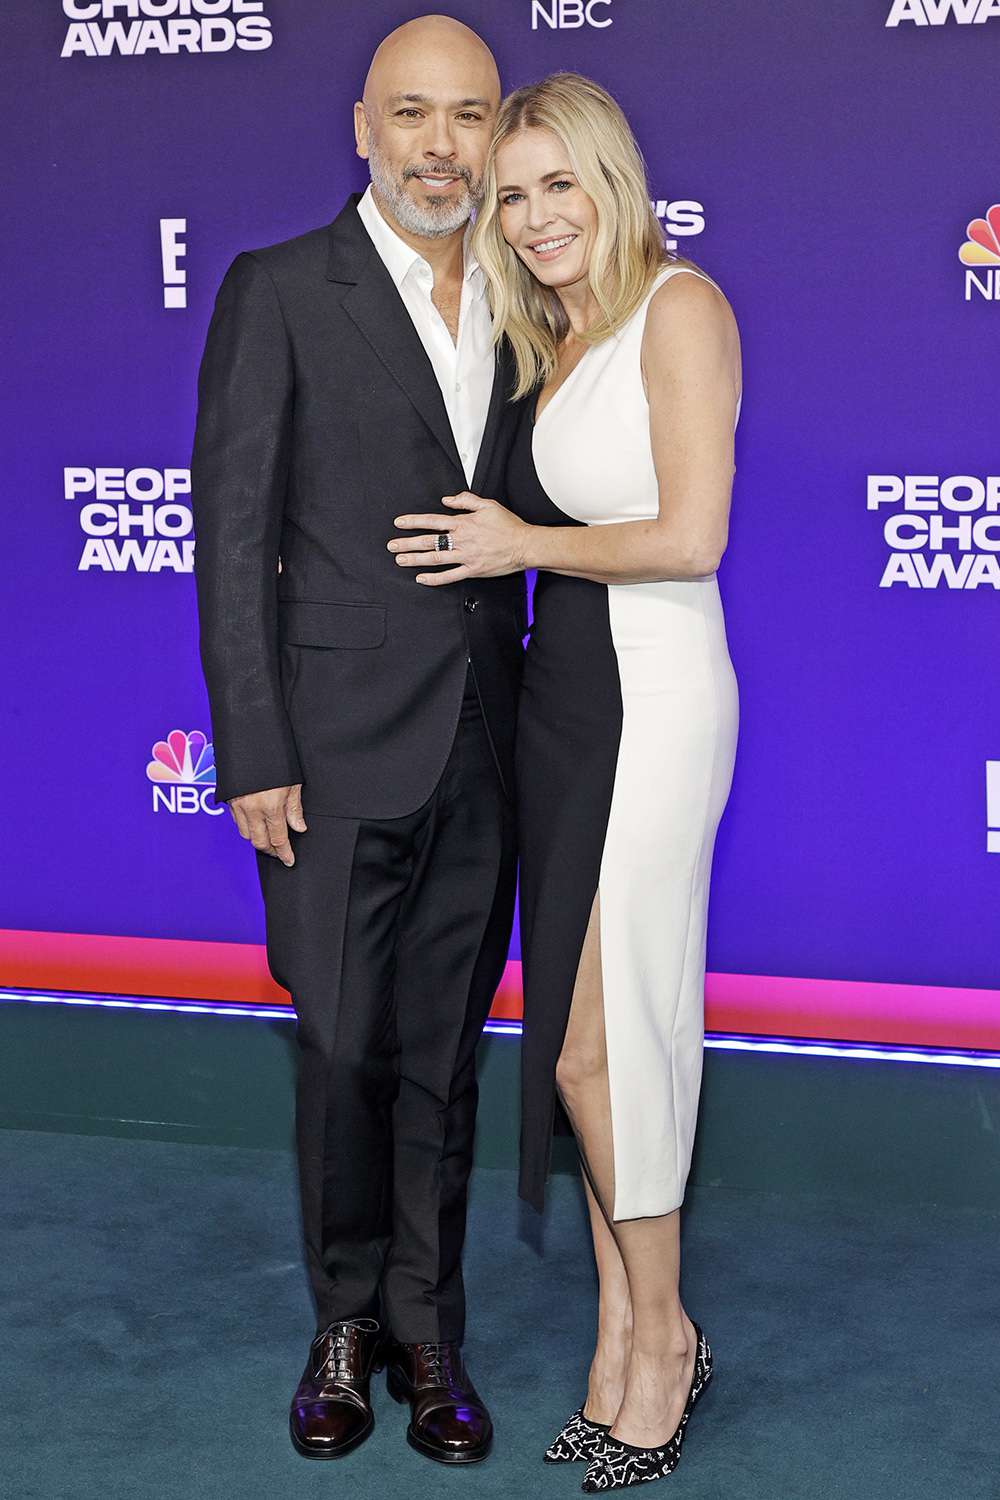 Chelsea Handler's relationship with Jo Koy